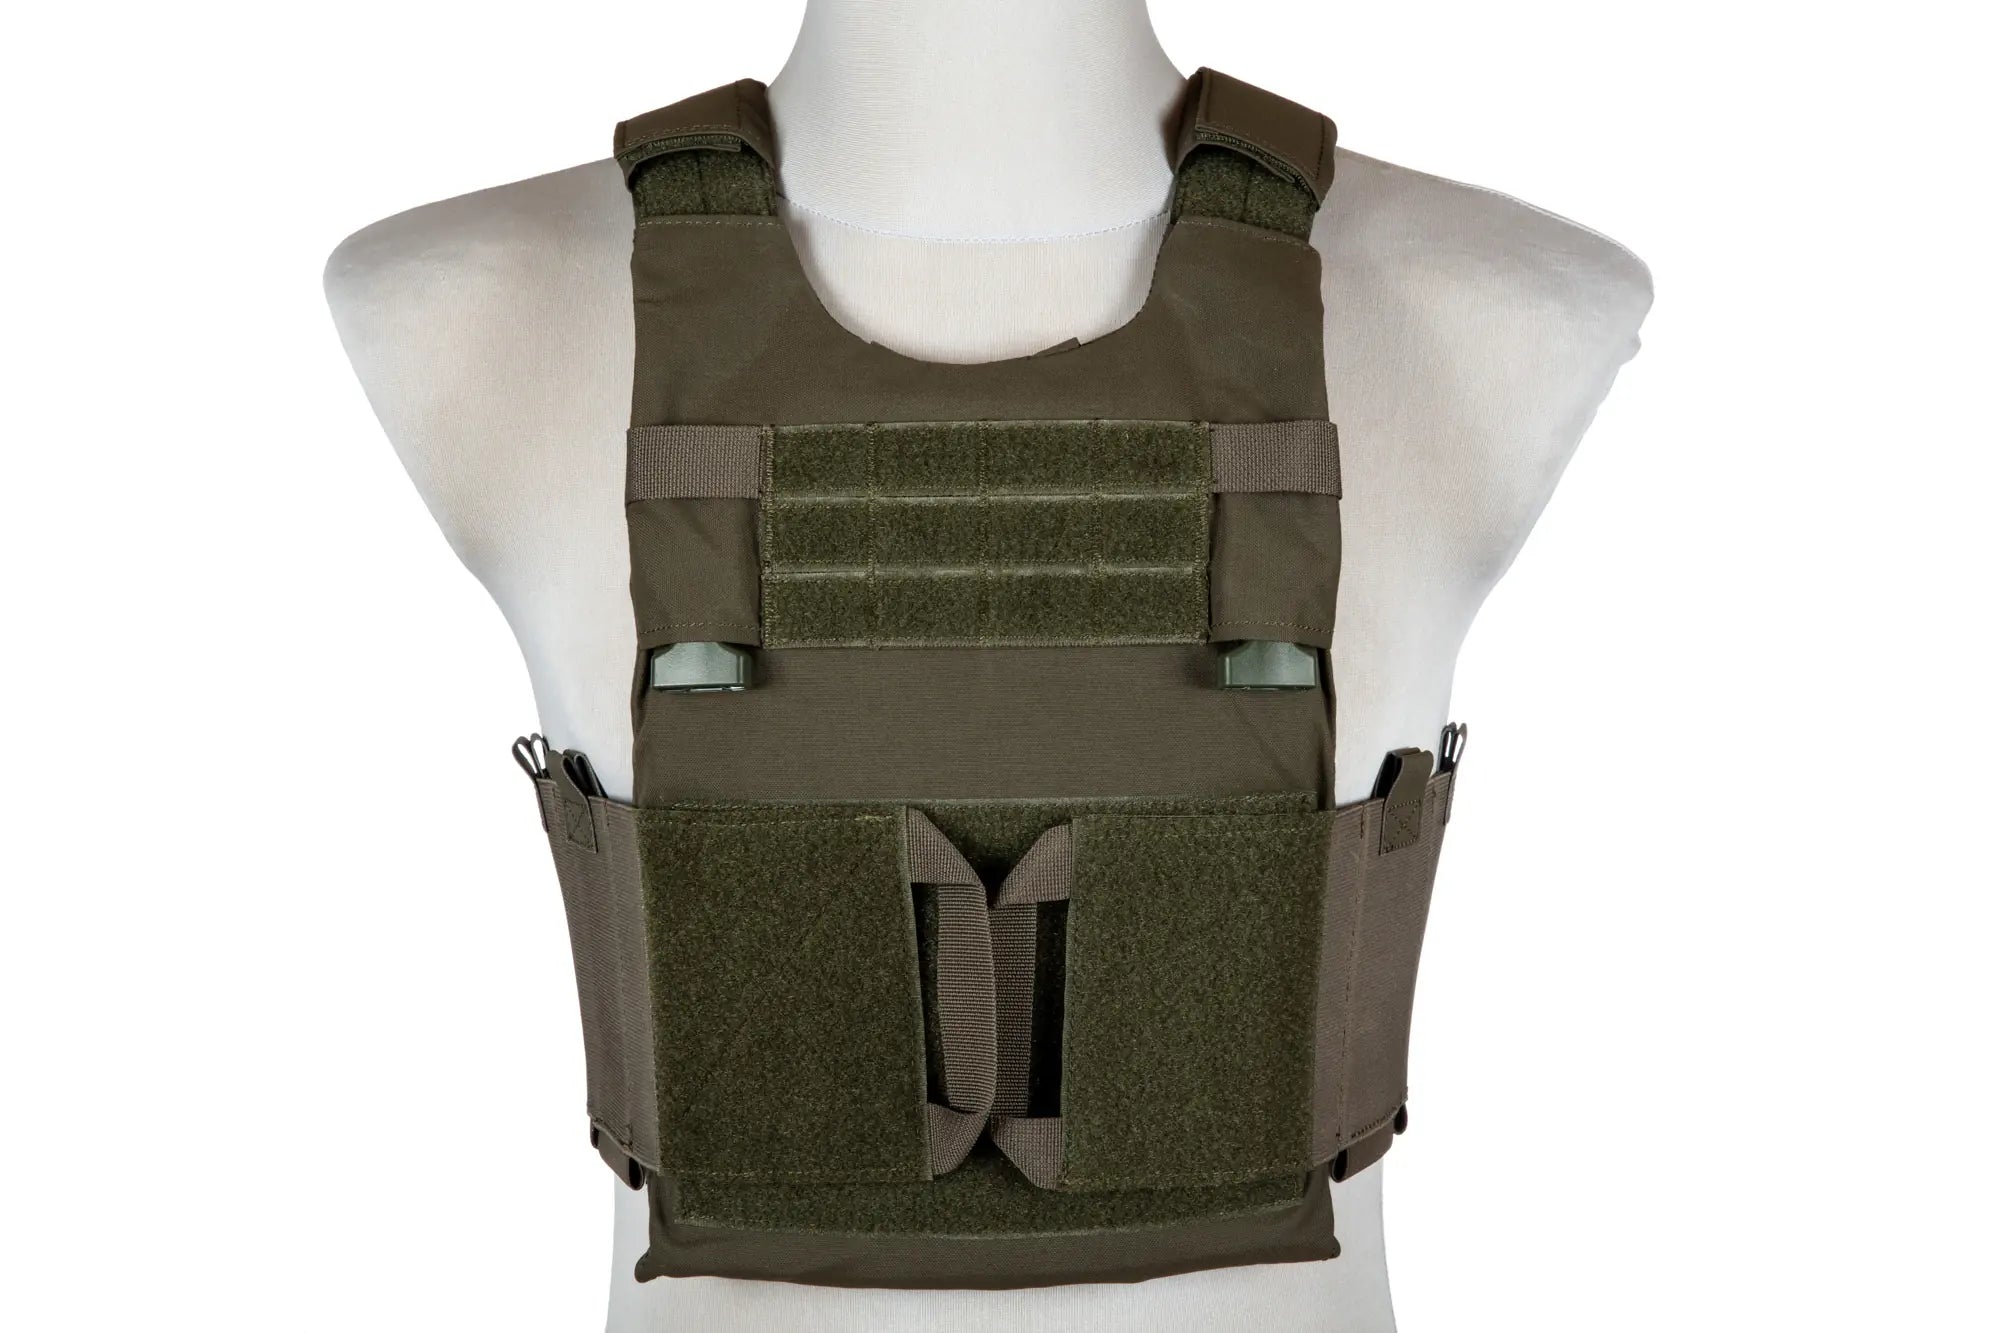 LV-119 Type Tactical Vest - Olive-1